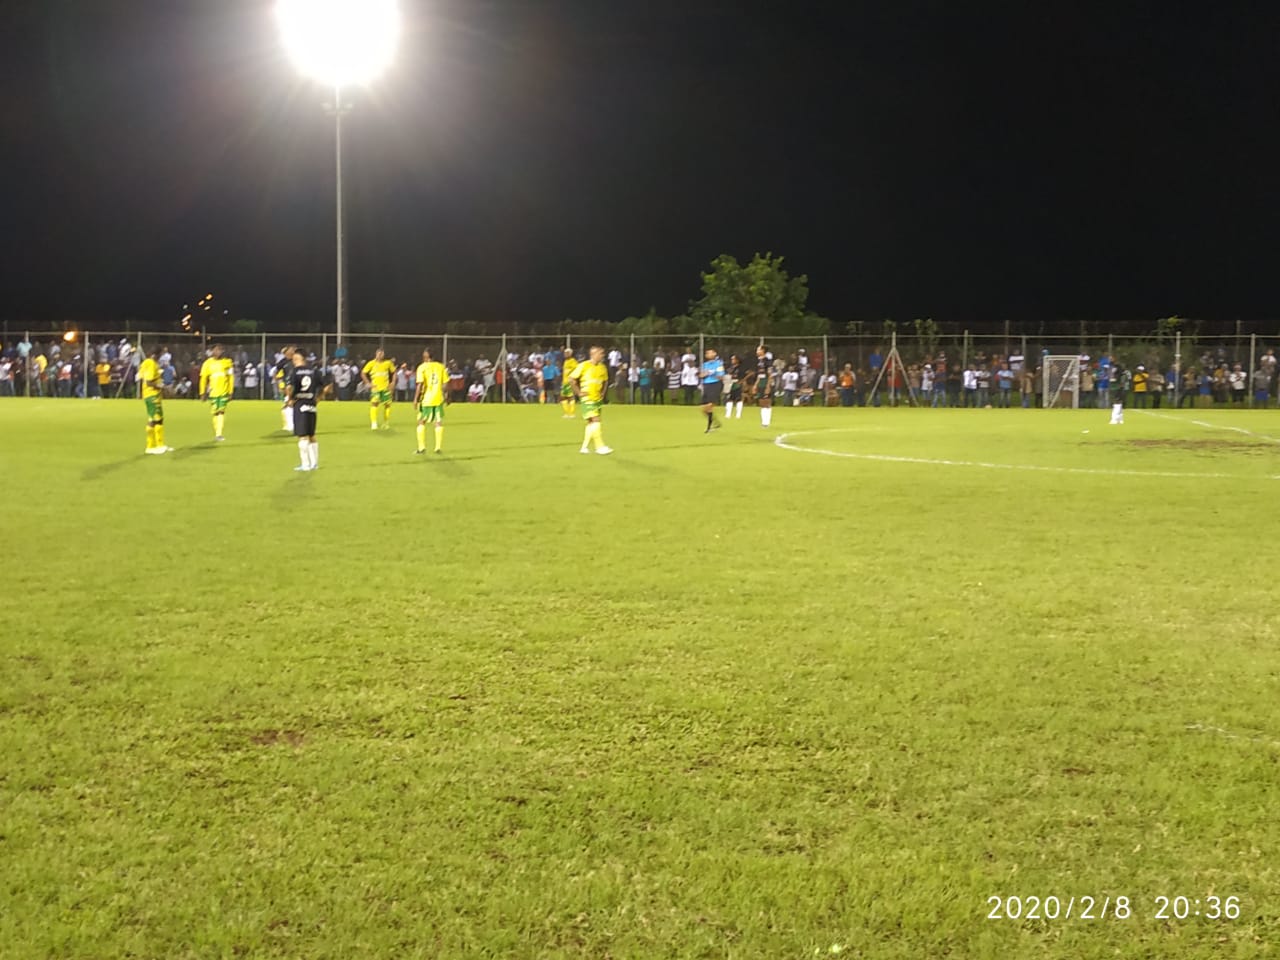     Derby franciscain en demi-finale de coupe de Martinique

